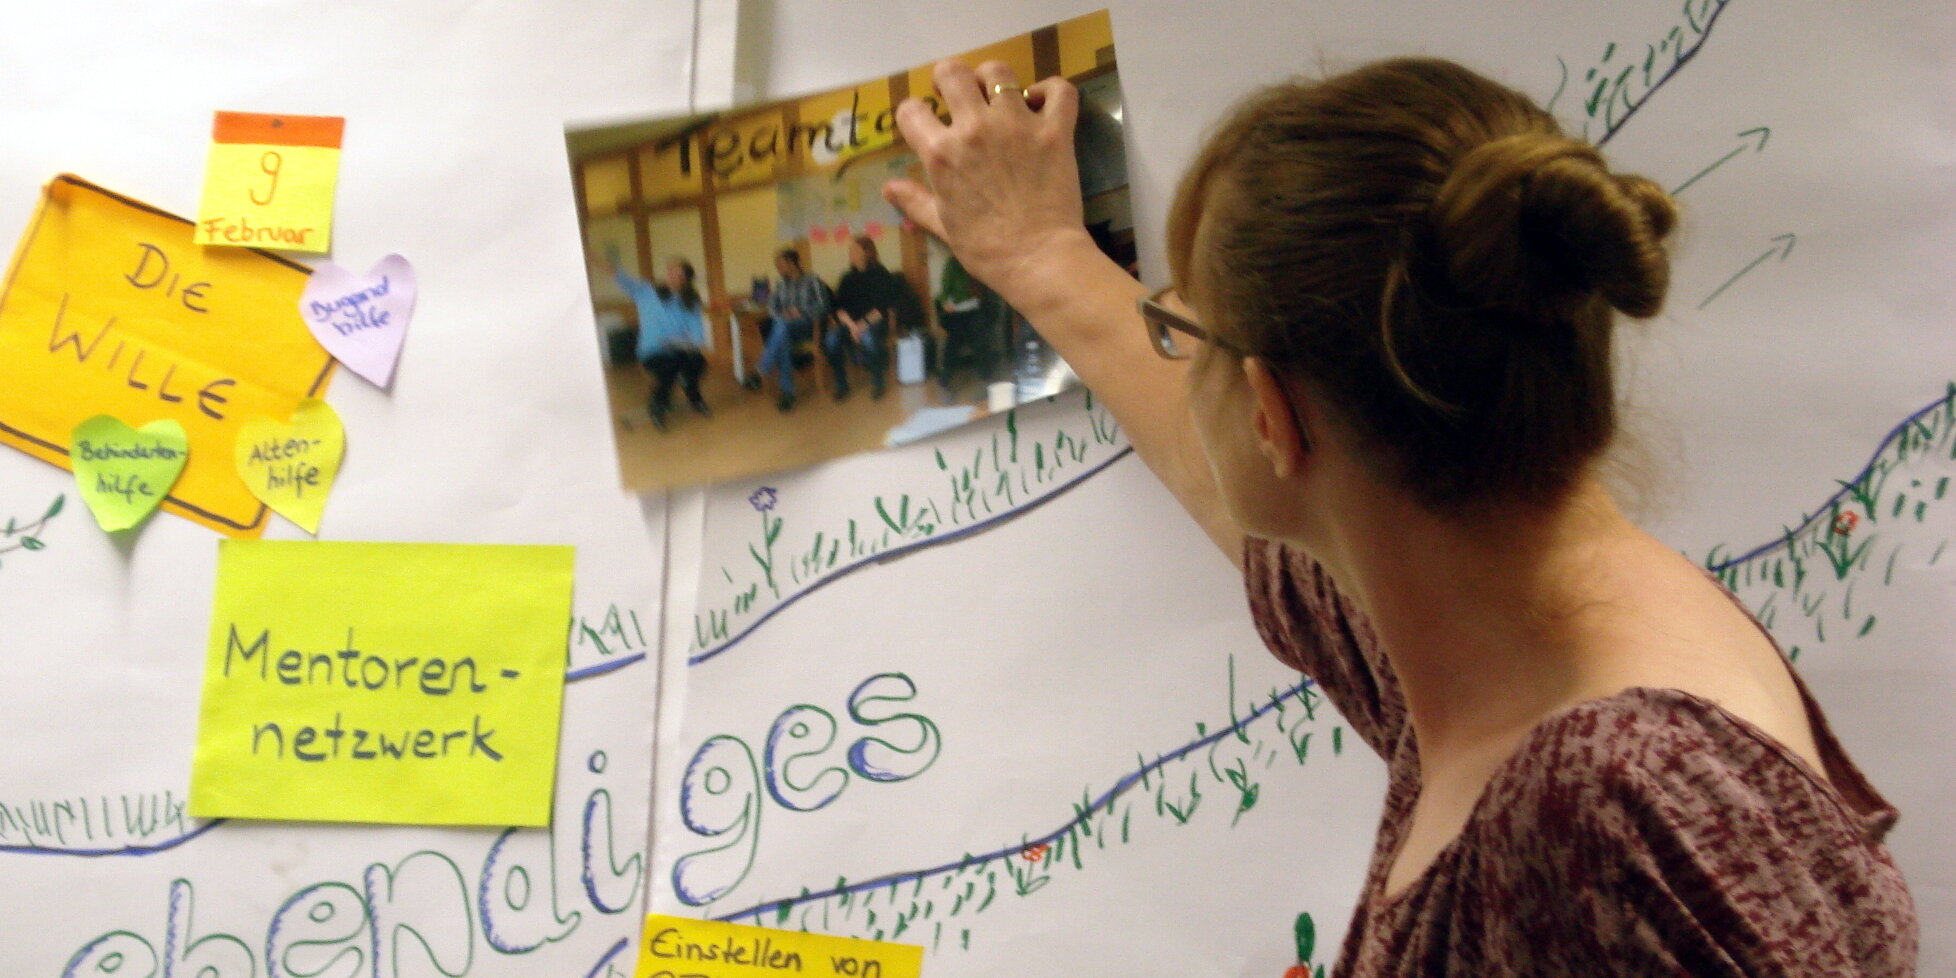 Eine Frau bringt ein Teamfoto an eine Papierfläche an. Um das Foto herum befinden sich mehrere beschriebene Haftnotizen.